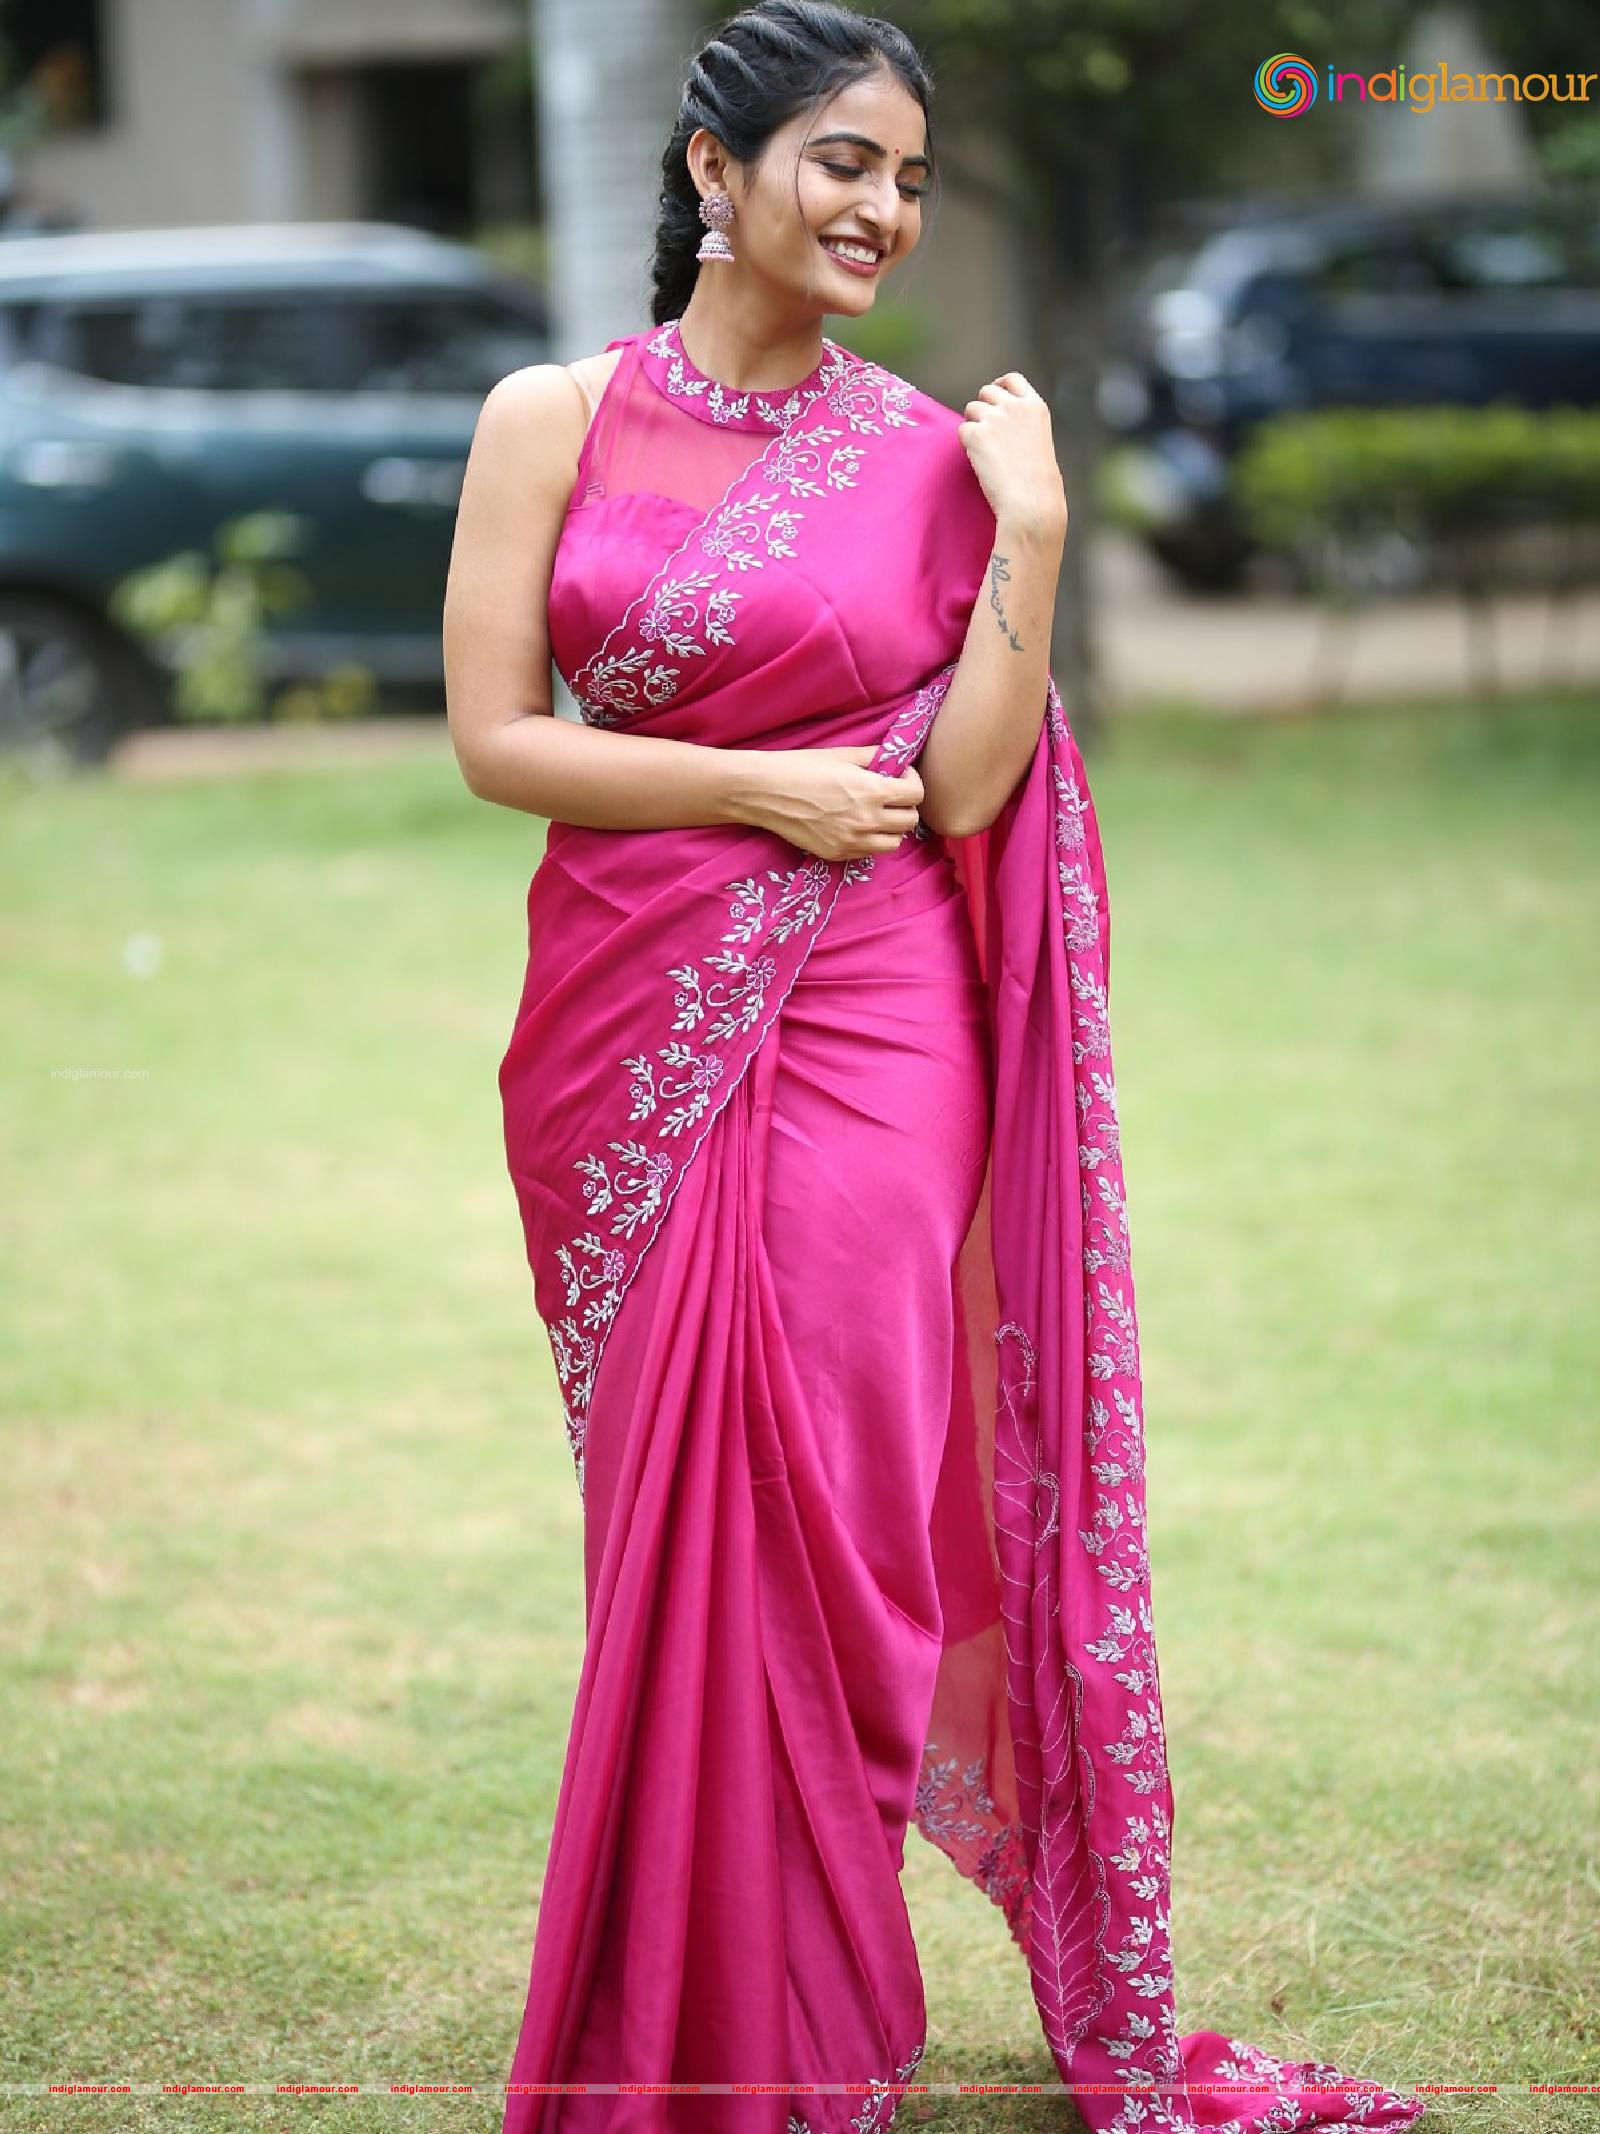 Ananya Nagalla Actress HD photos,images,pics and stills-indiglamour.com ...